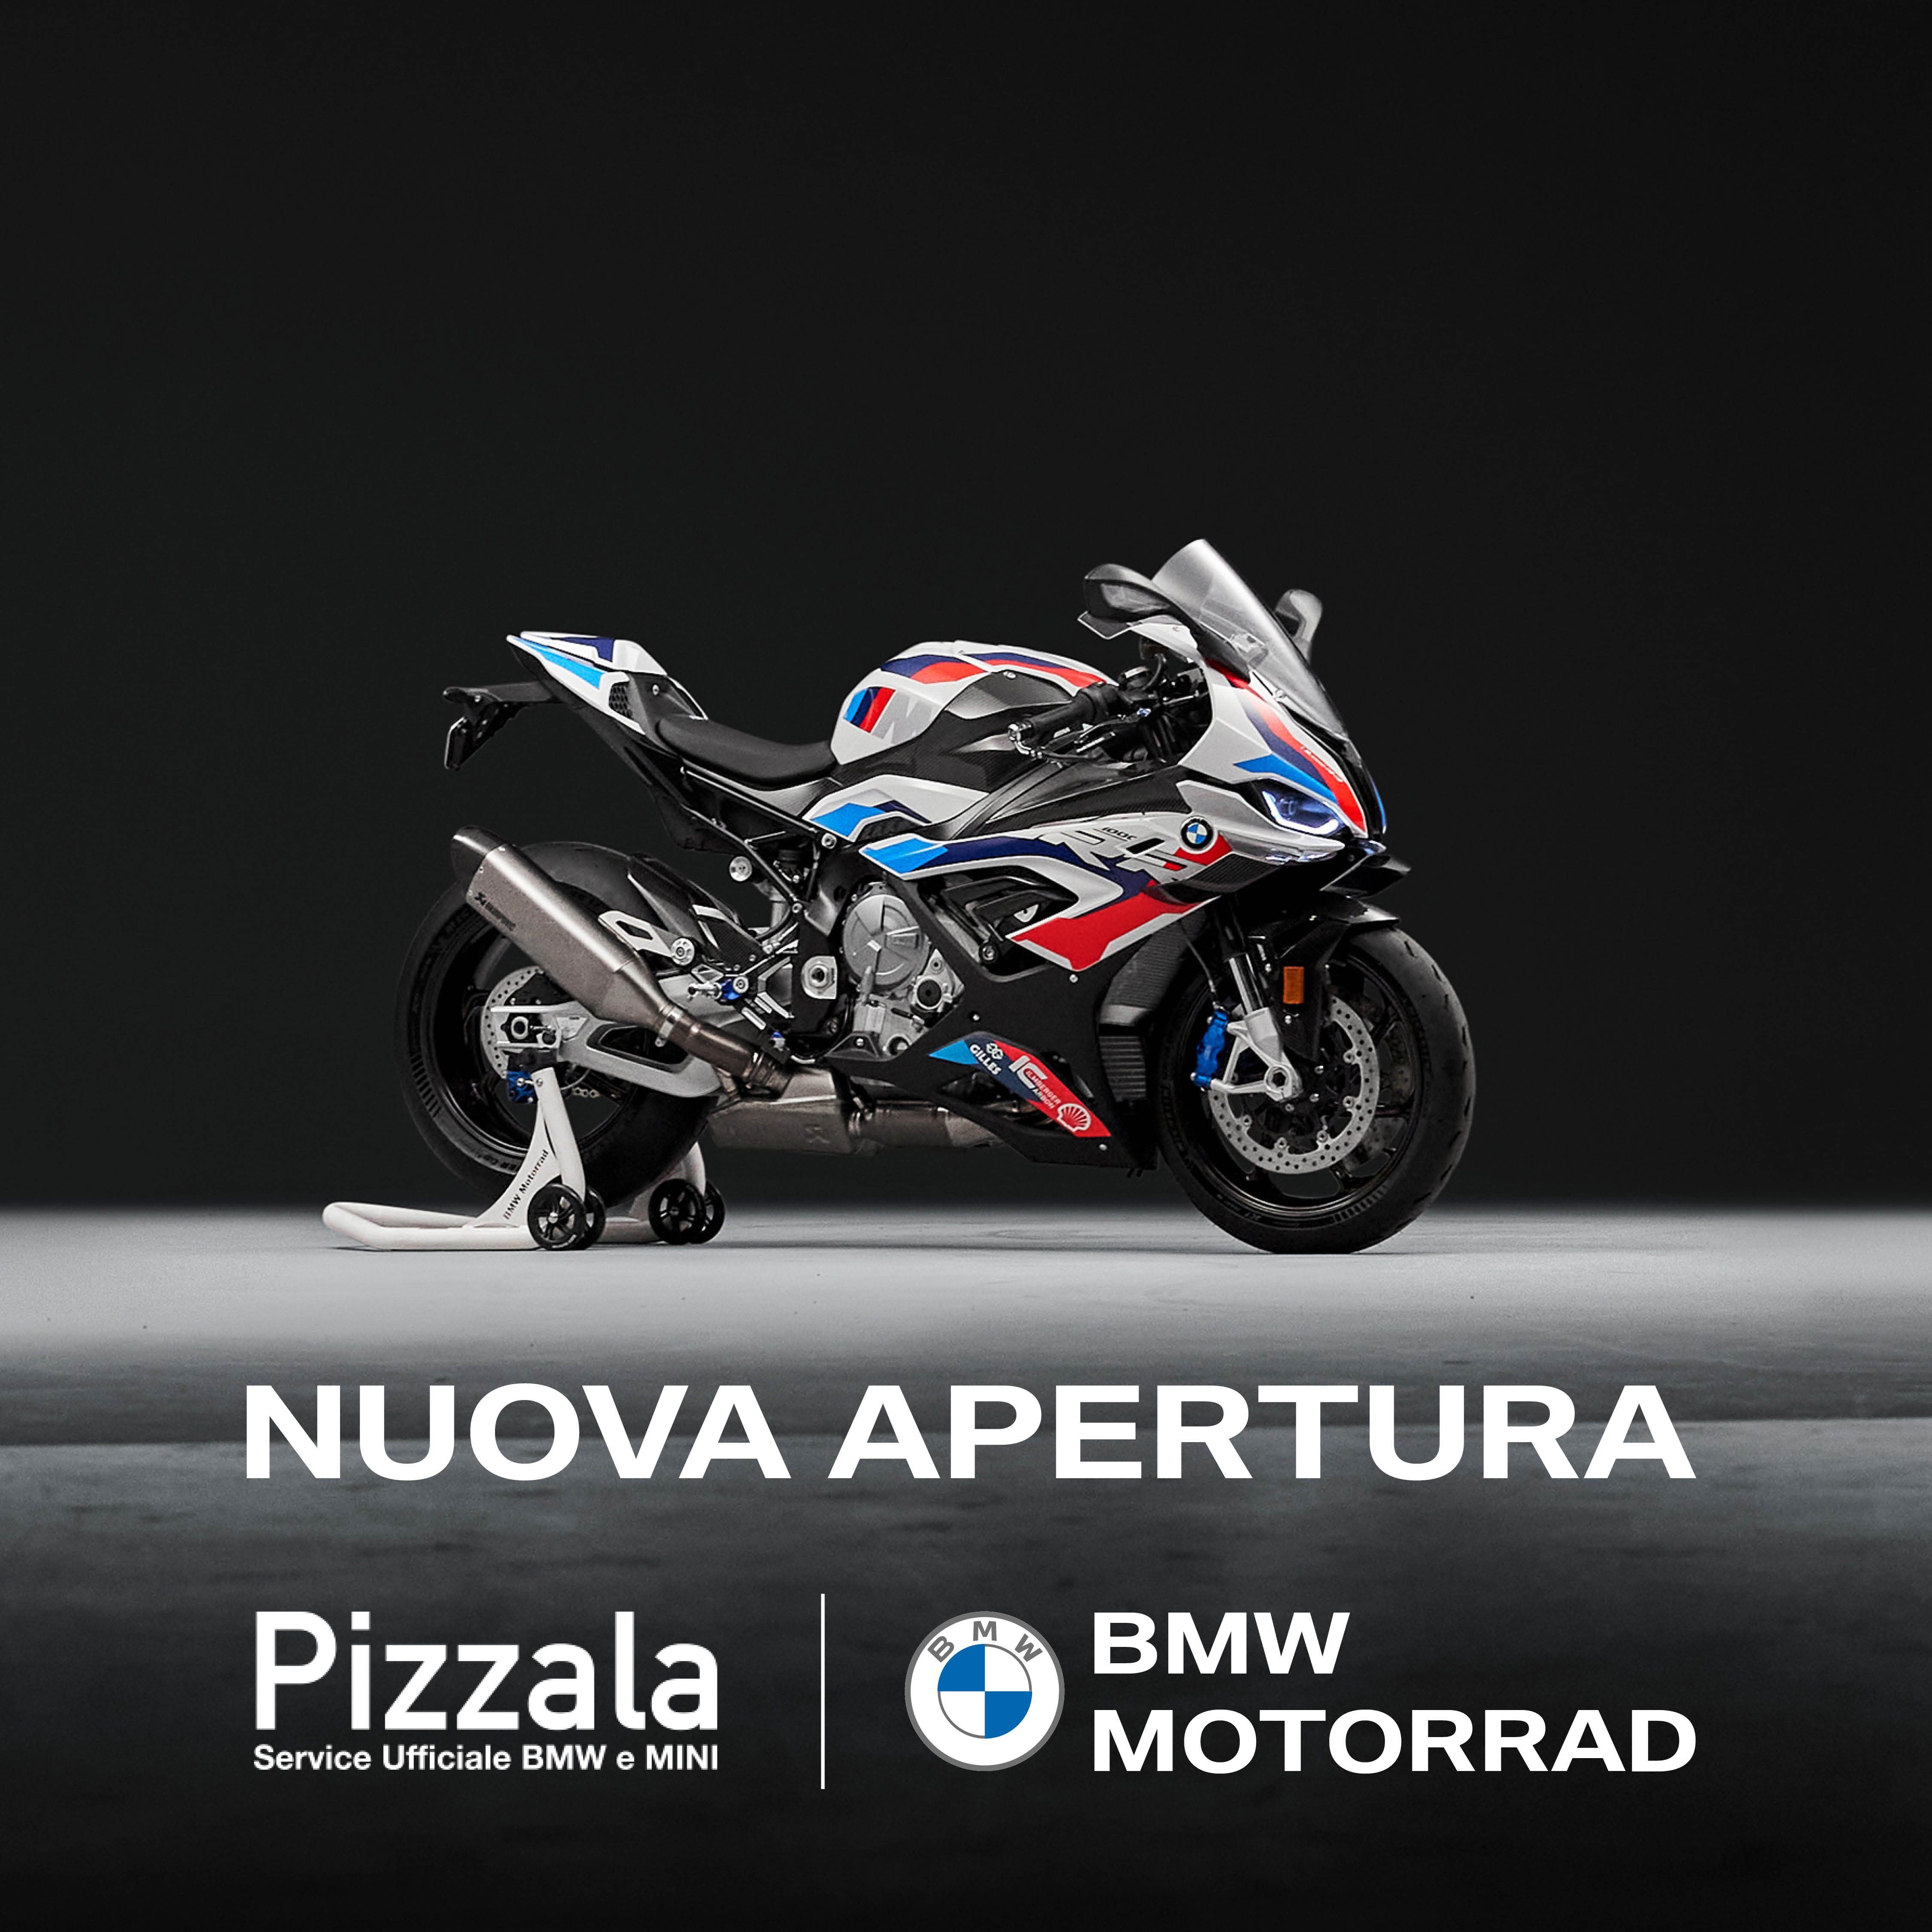 Pizzala Service BMW E MINI Magenta Amplia I Suoi Orizzonti:  Ora Anche Service Ufficiale BMW MOTORRAD